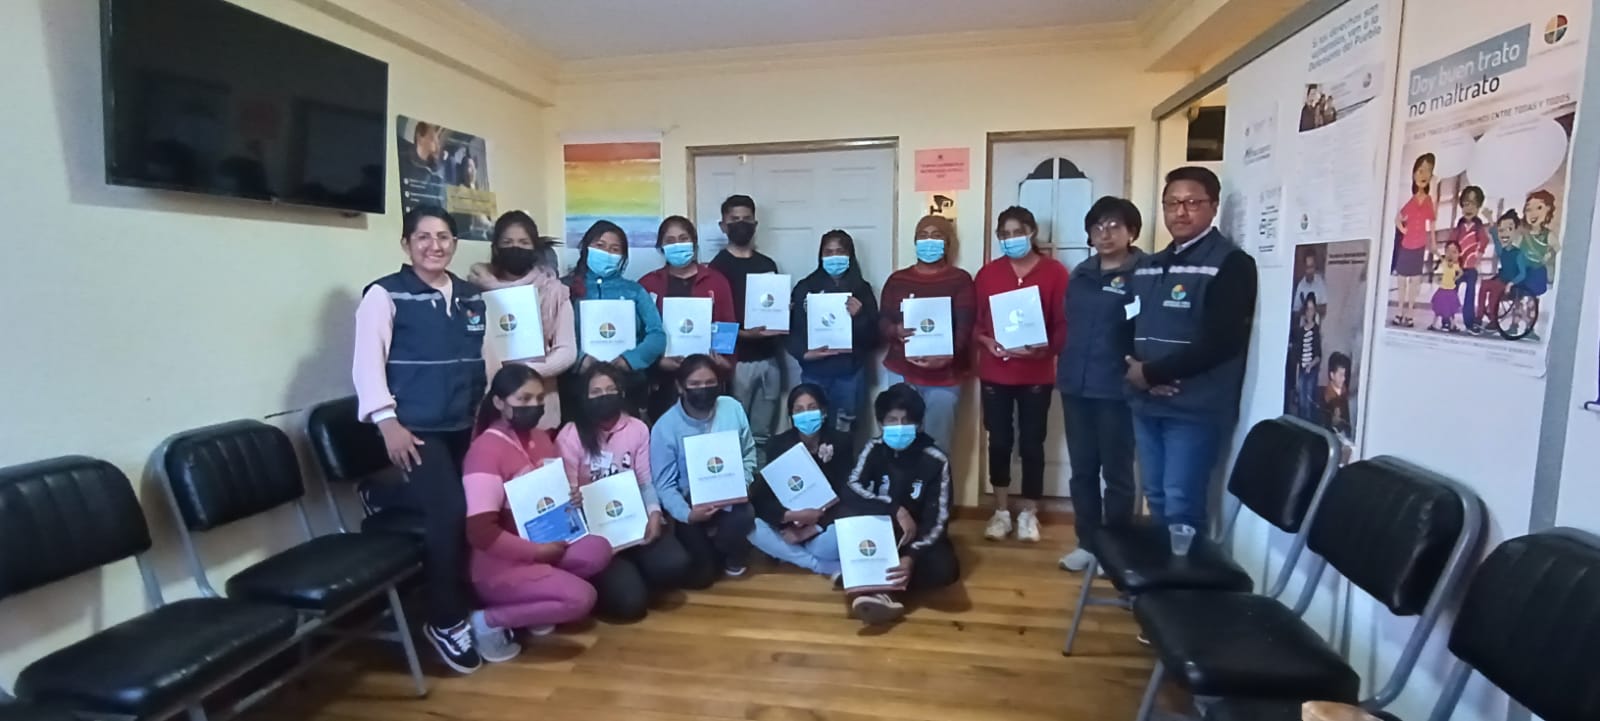 Defensoría del Pueblo, realizó una actividad de promoción en conmemoración al día del niño boliviano, con los Defensores Voluntarios del municipio de Desaguadero.